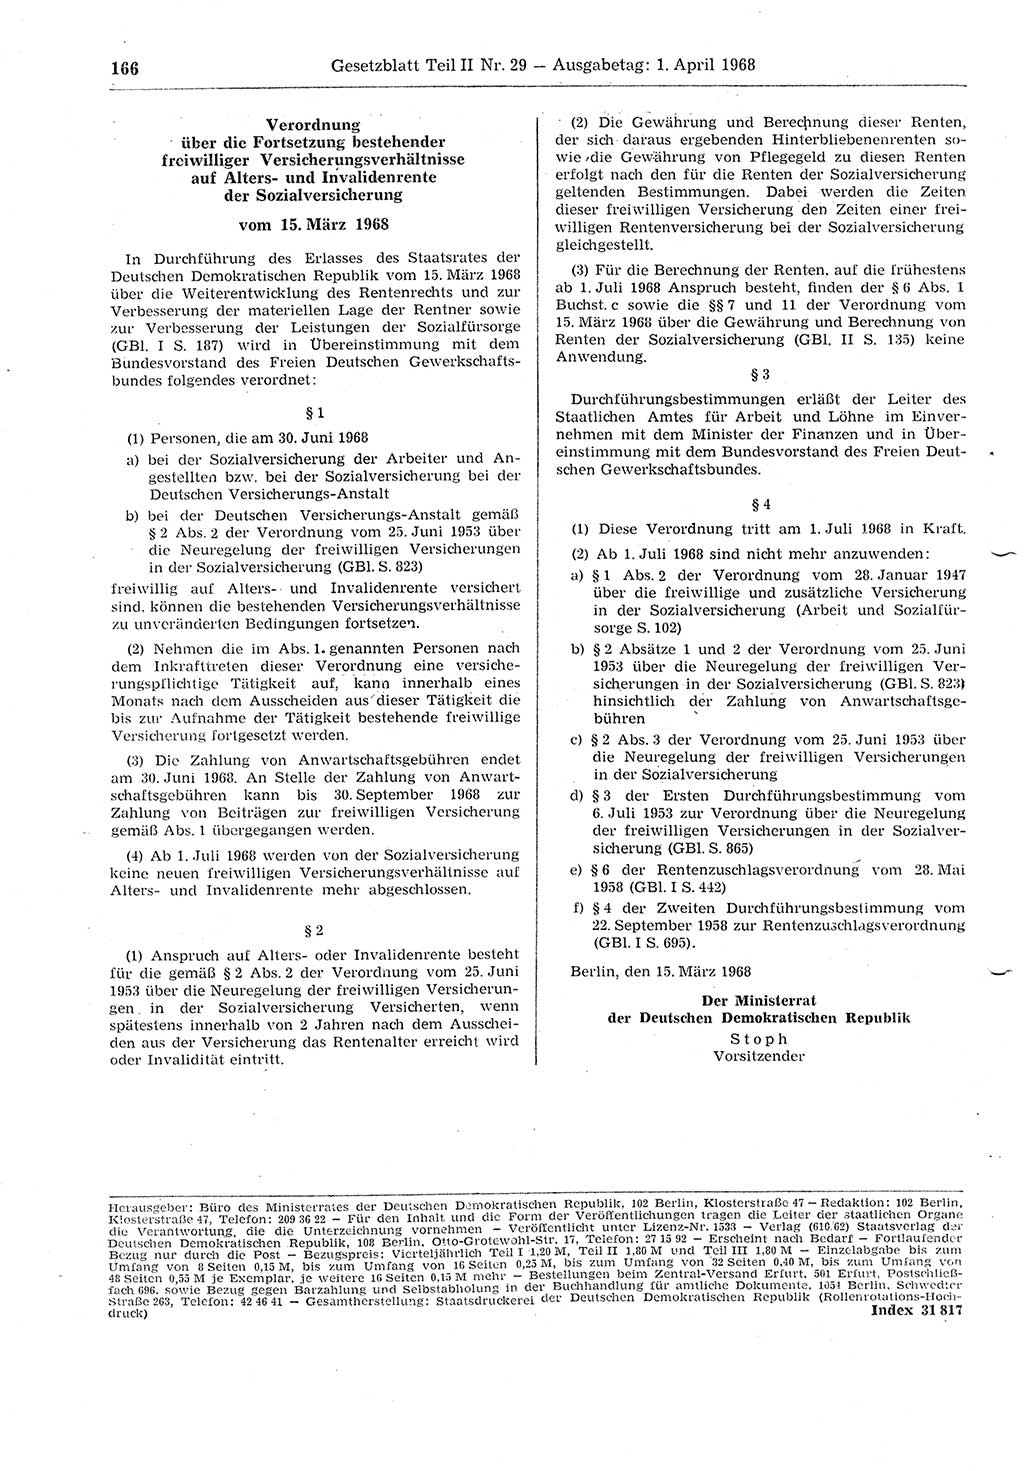 Gesetzblatt (GBl.) der Deutschen Demokratischen Republik (DDR) Teil ⅠⅠ 1968, Seite 166 (GBl. DDR ⅠⅠ 1968, S. 166)